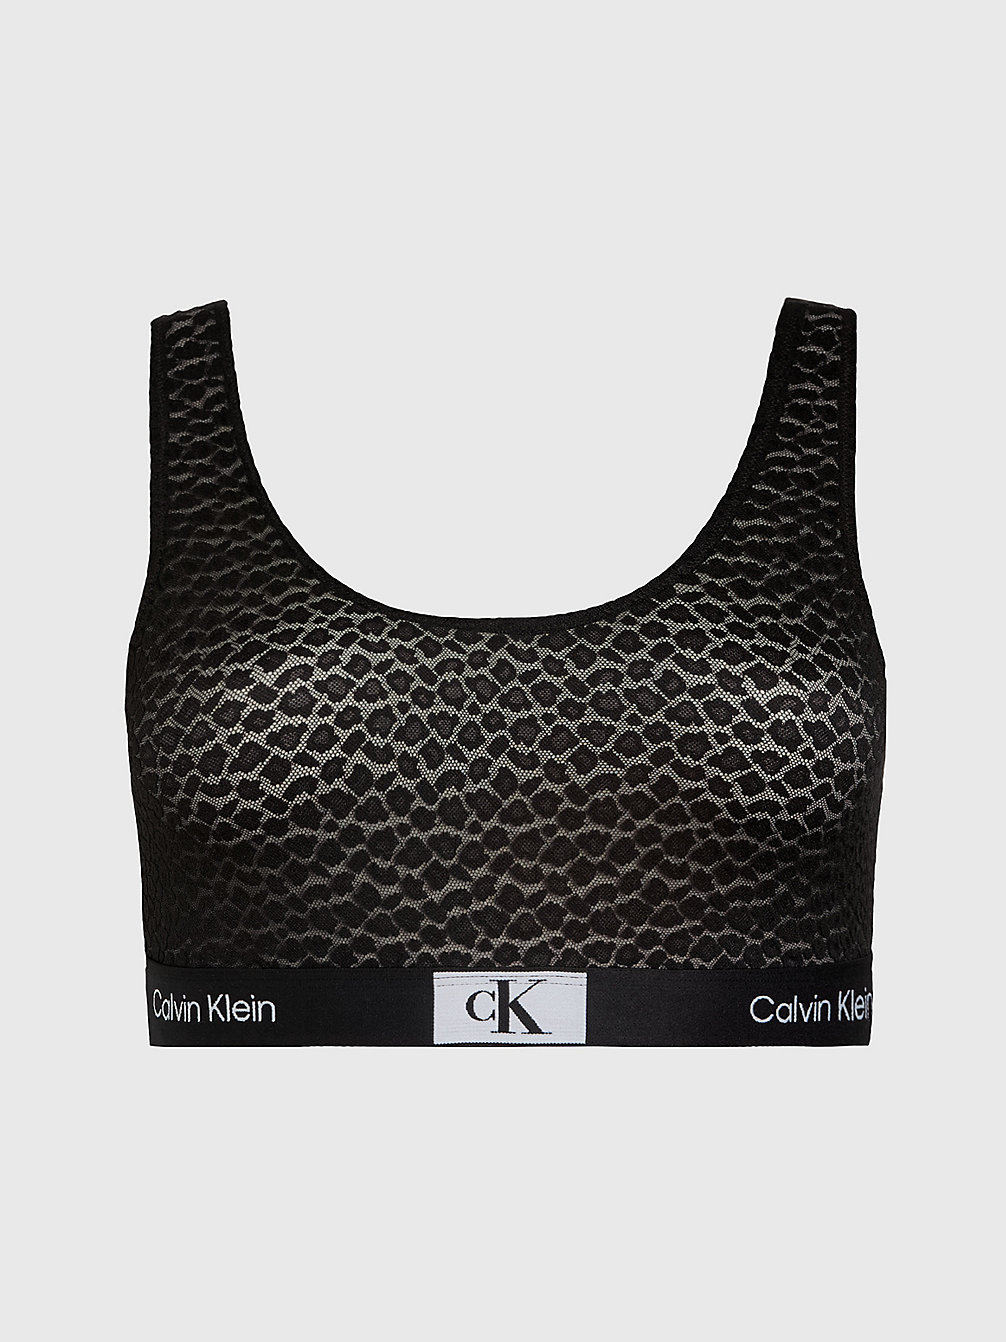 Brassière Plus Size - Ck96 > BLACK > undefined donna > Calvin Klein